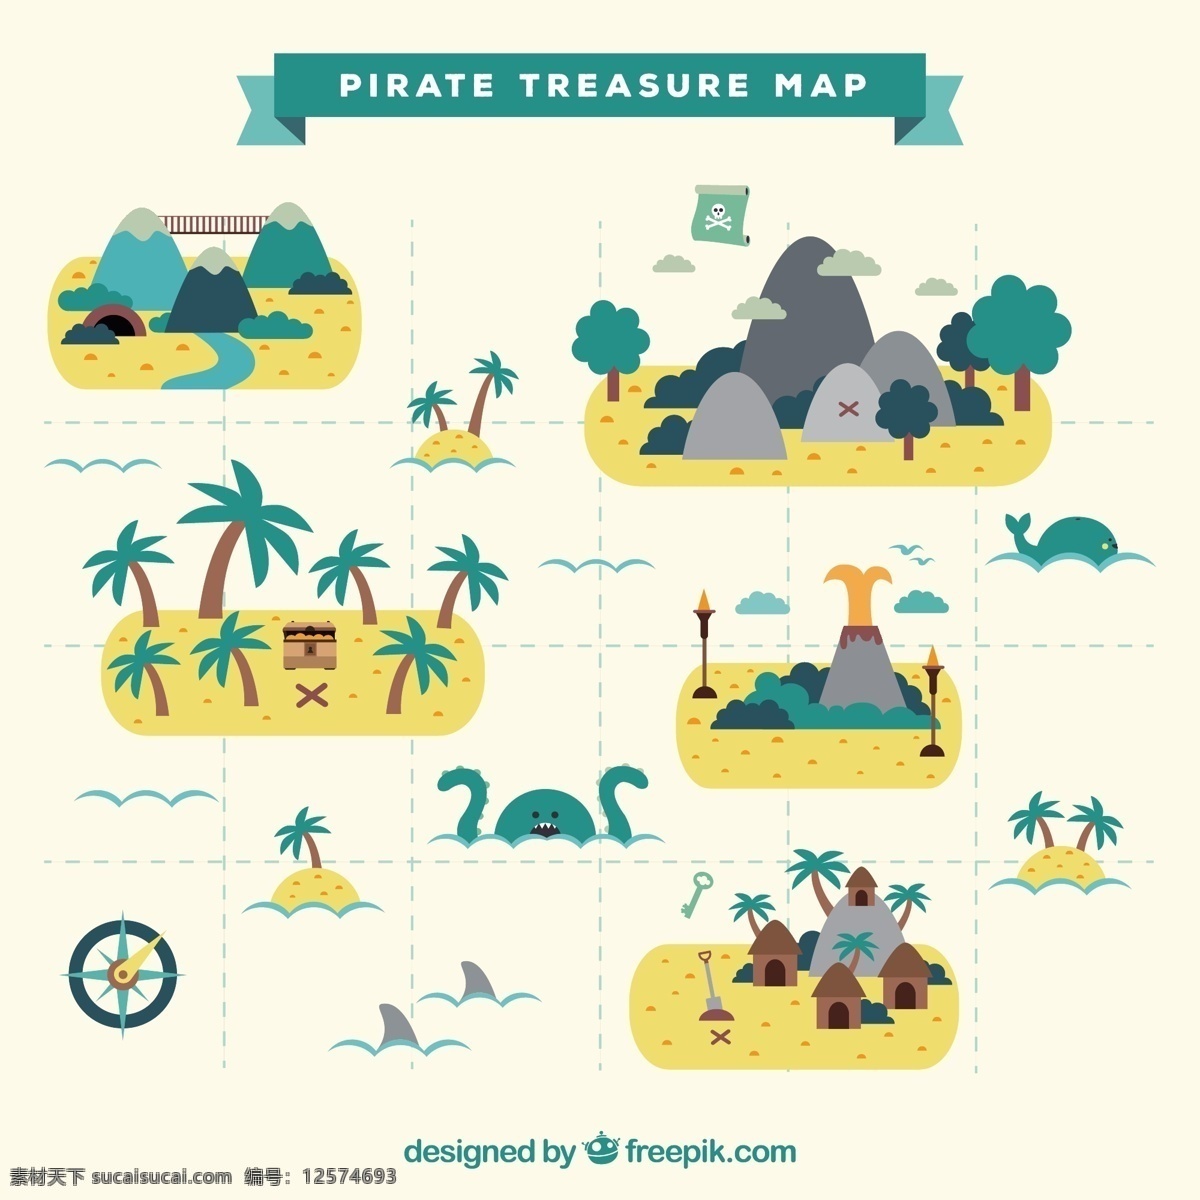 扁平 风格 海盗 藏 宝 地图 装饰 棕榈树 扁平风格 海盗藏宝地图 装饰棕榈树